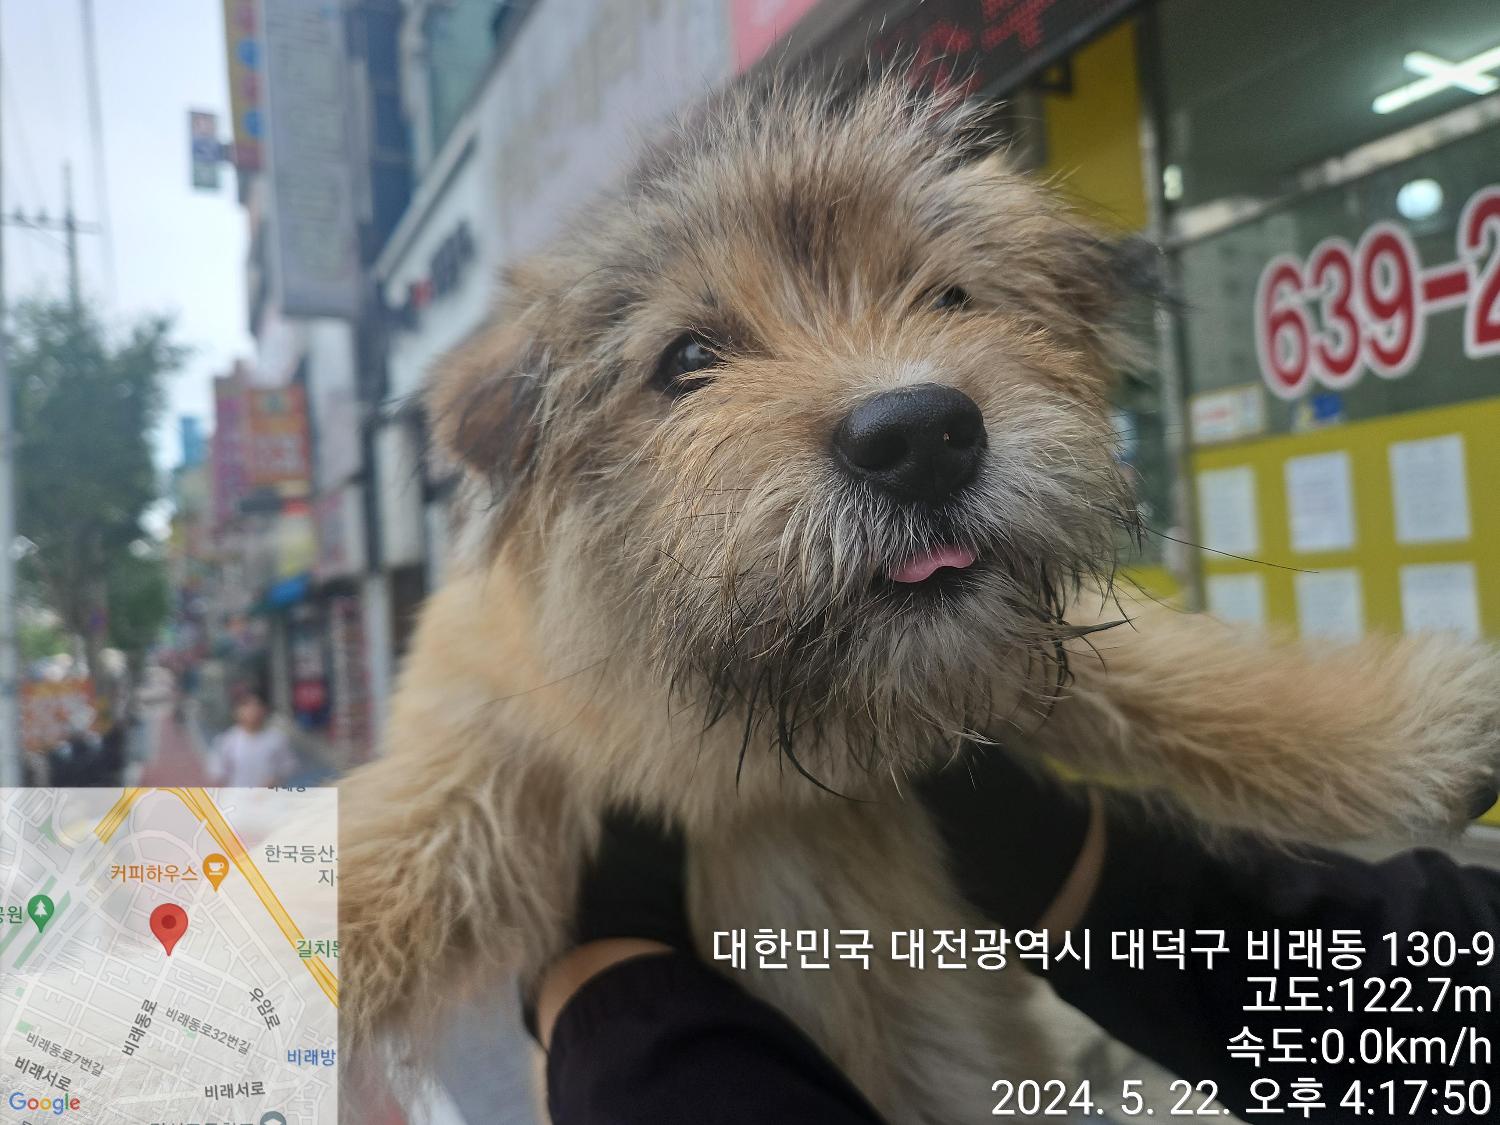 공고 번호가 대전-대덕-2024-00094인 믹스견 동물 사진